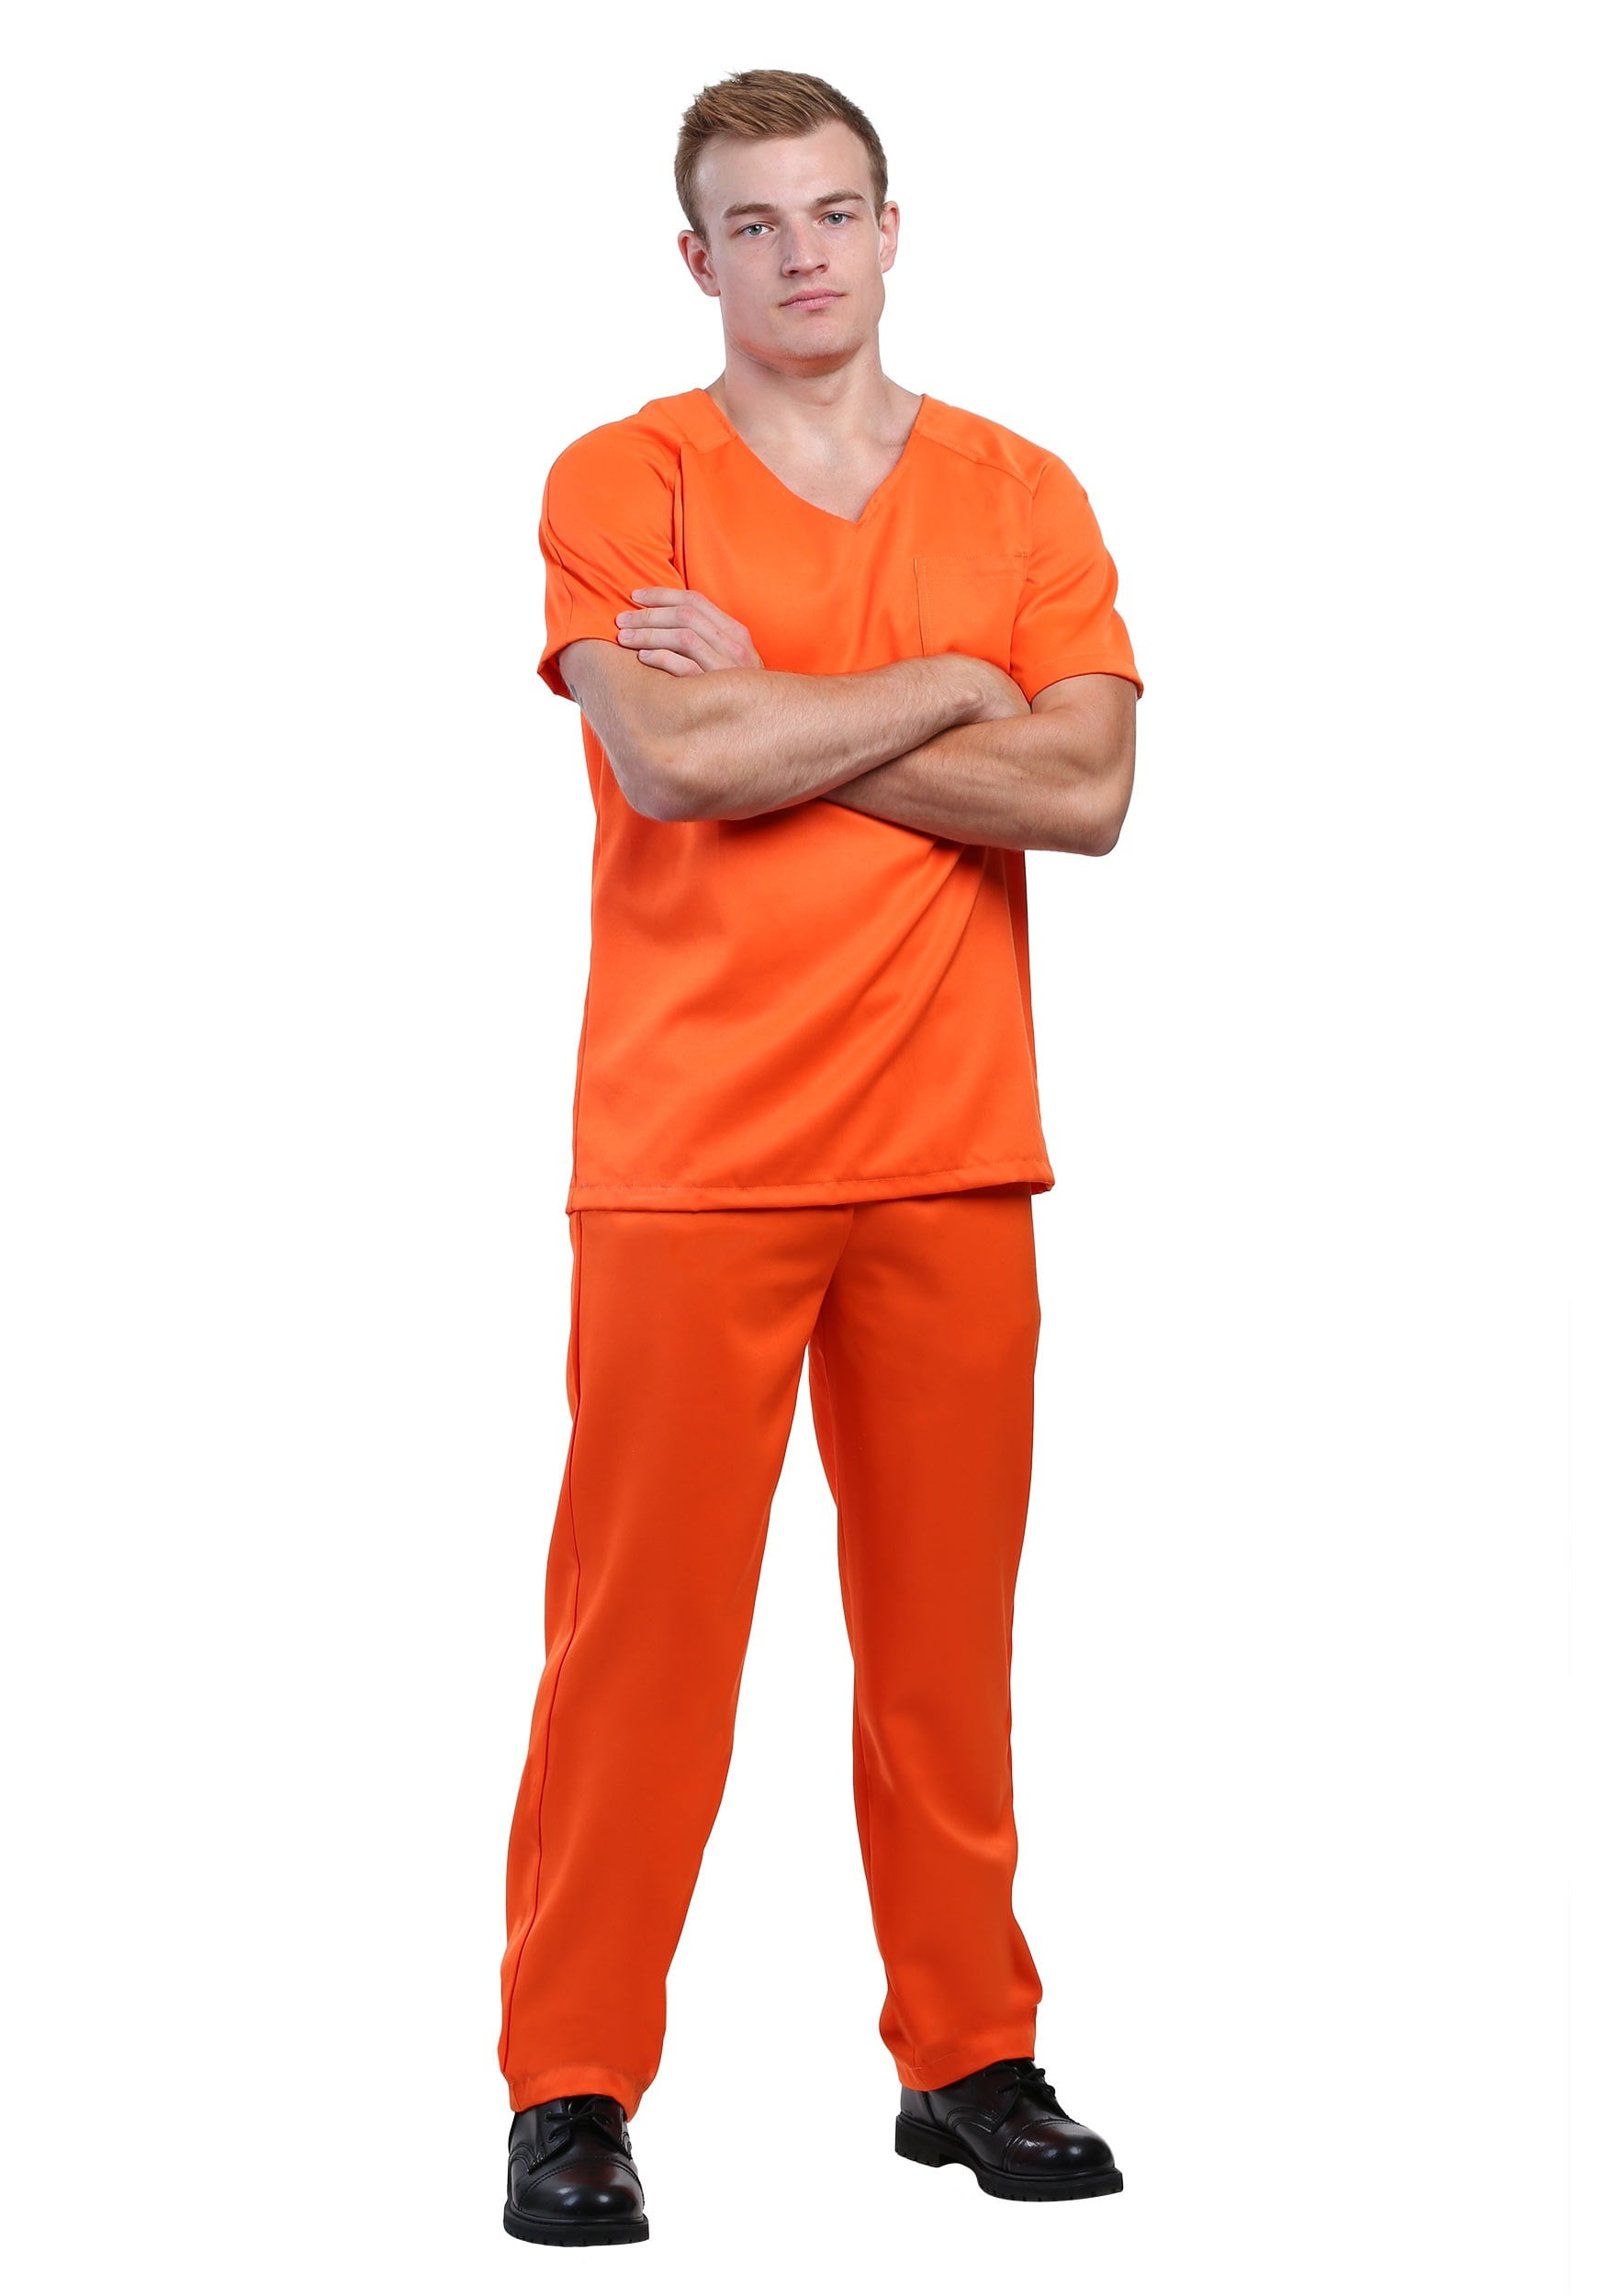 Люди в оранжевой одежде